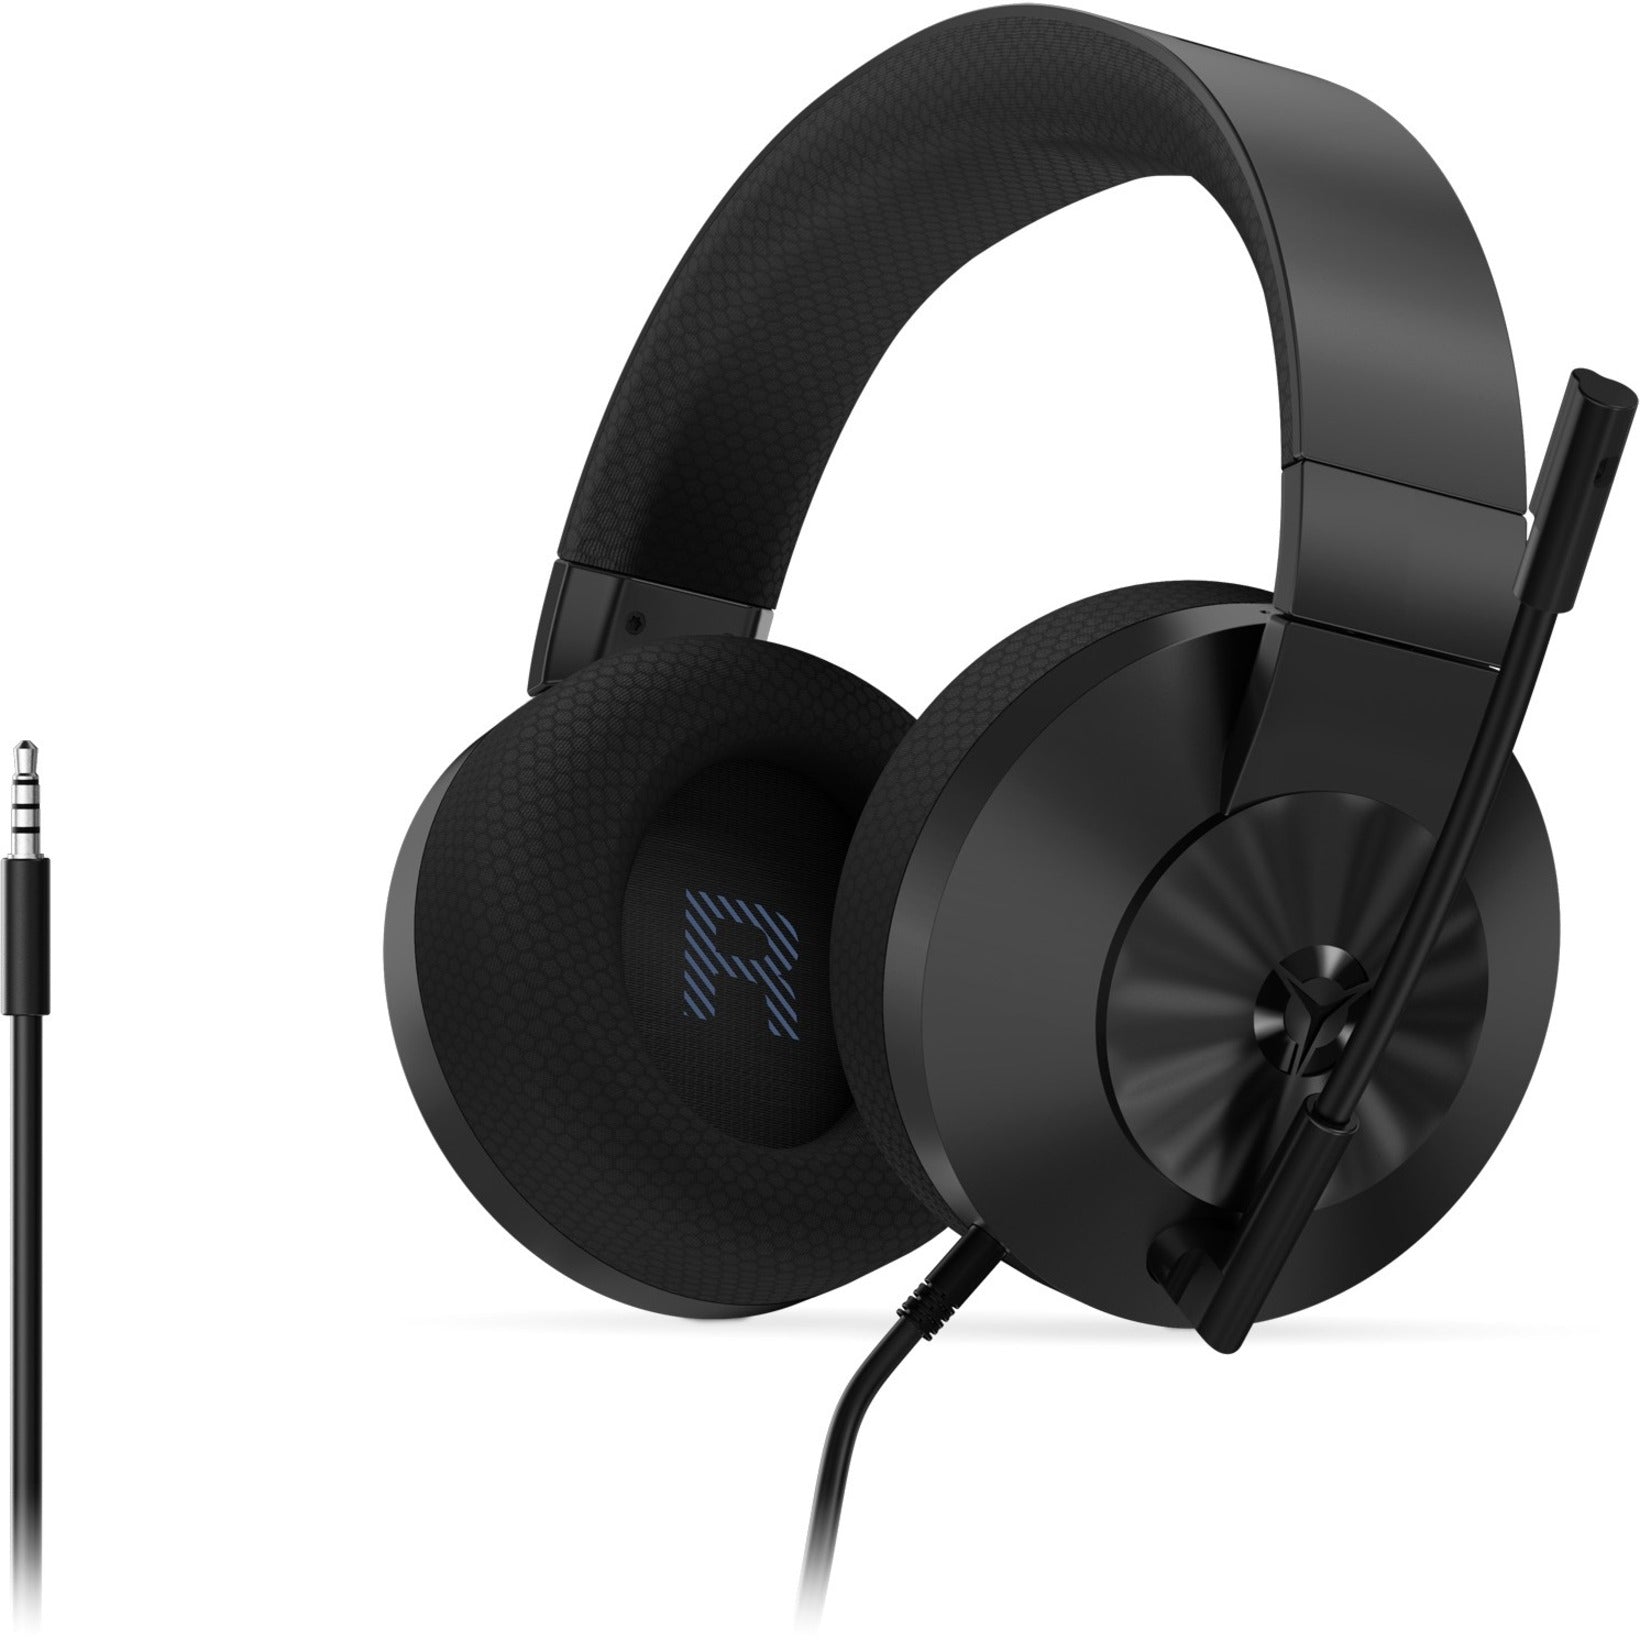 联想 GXD1B87065 军团 H200 游戏耳机，头戴式双耳立体声游戏耳机带有降噪麦克风 联想品牌名称： 联想